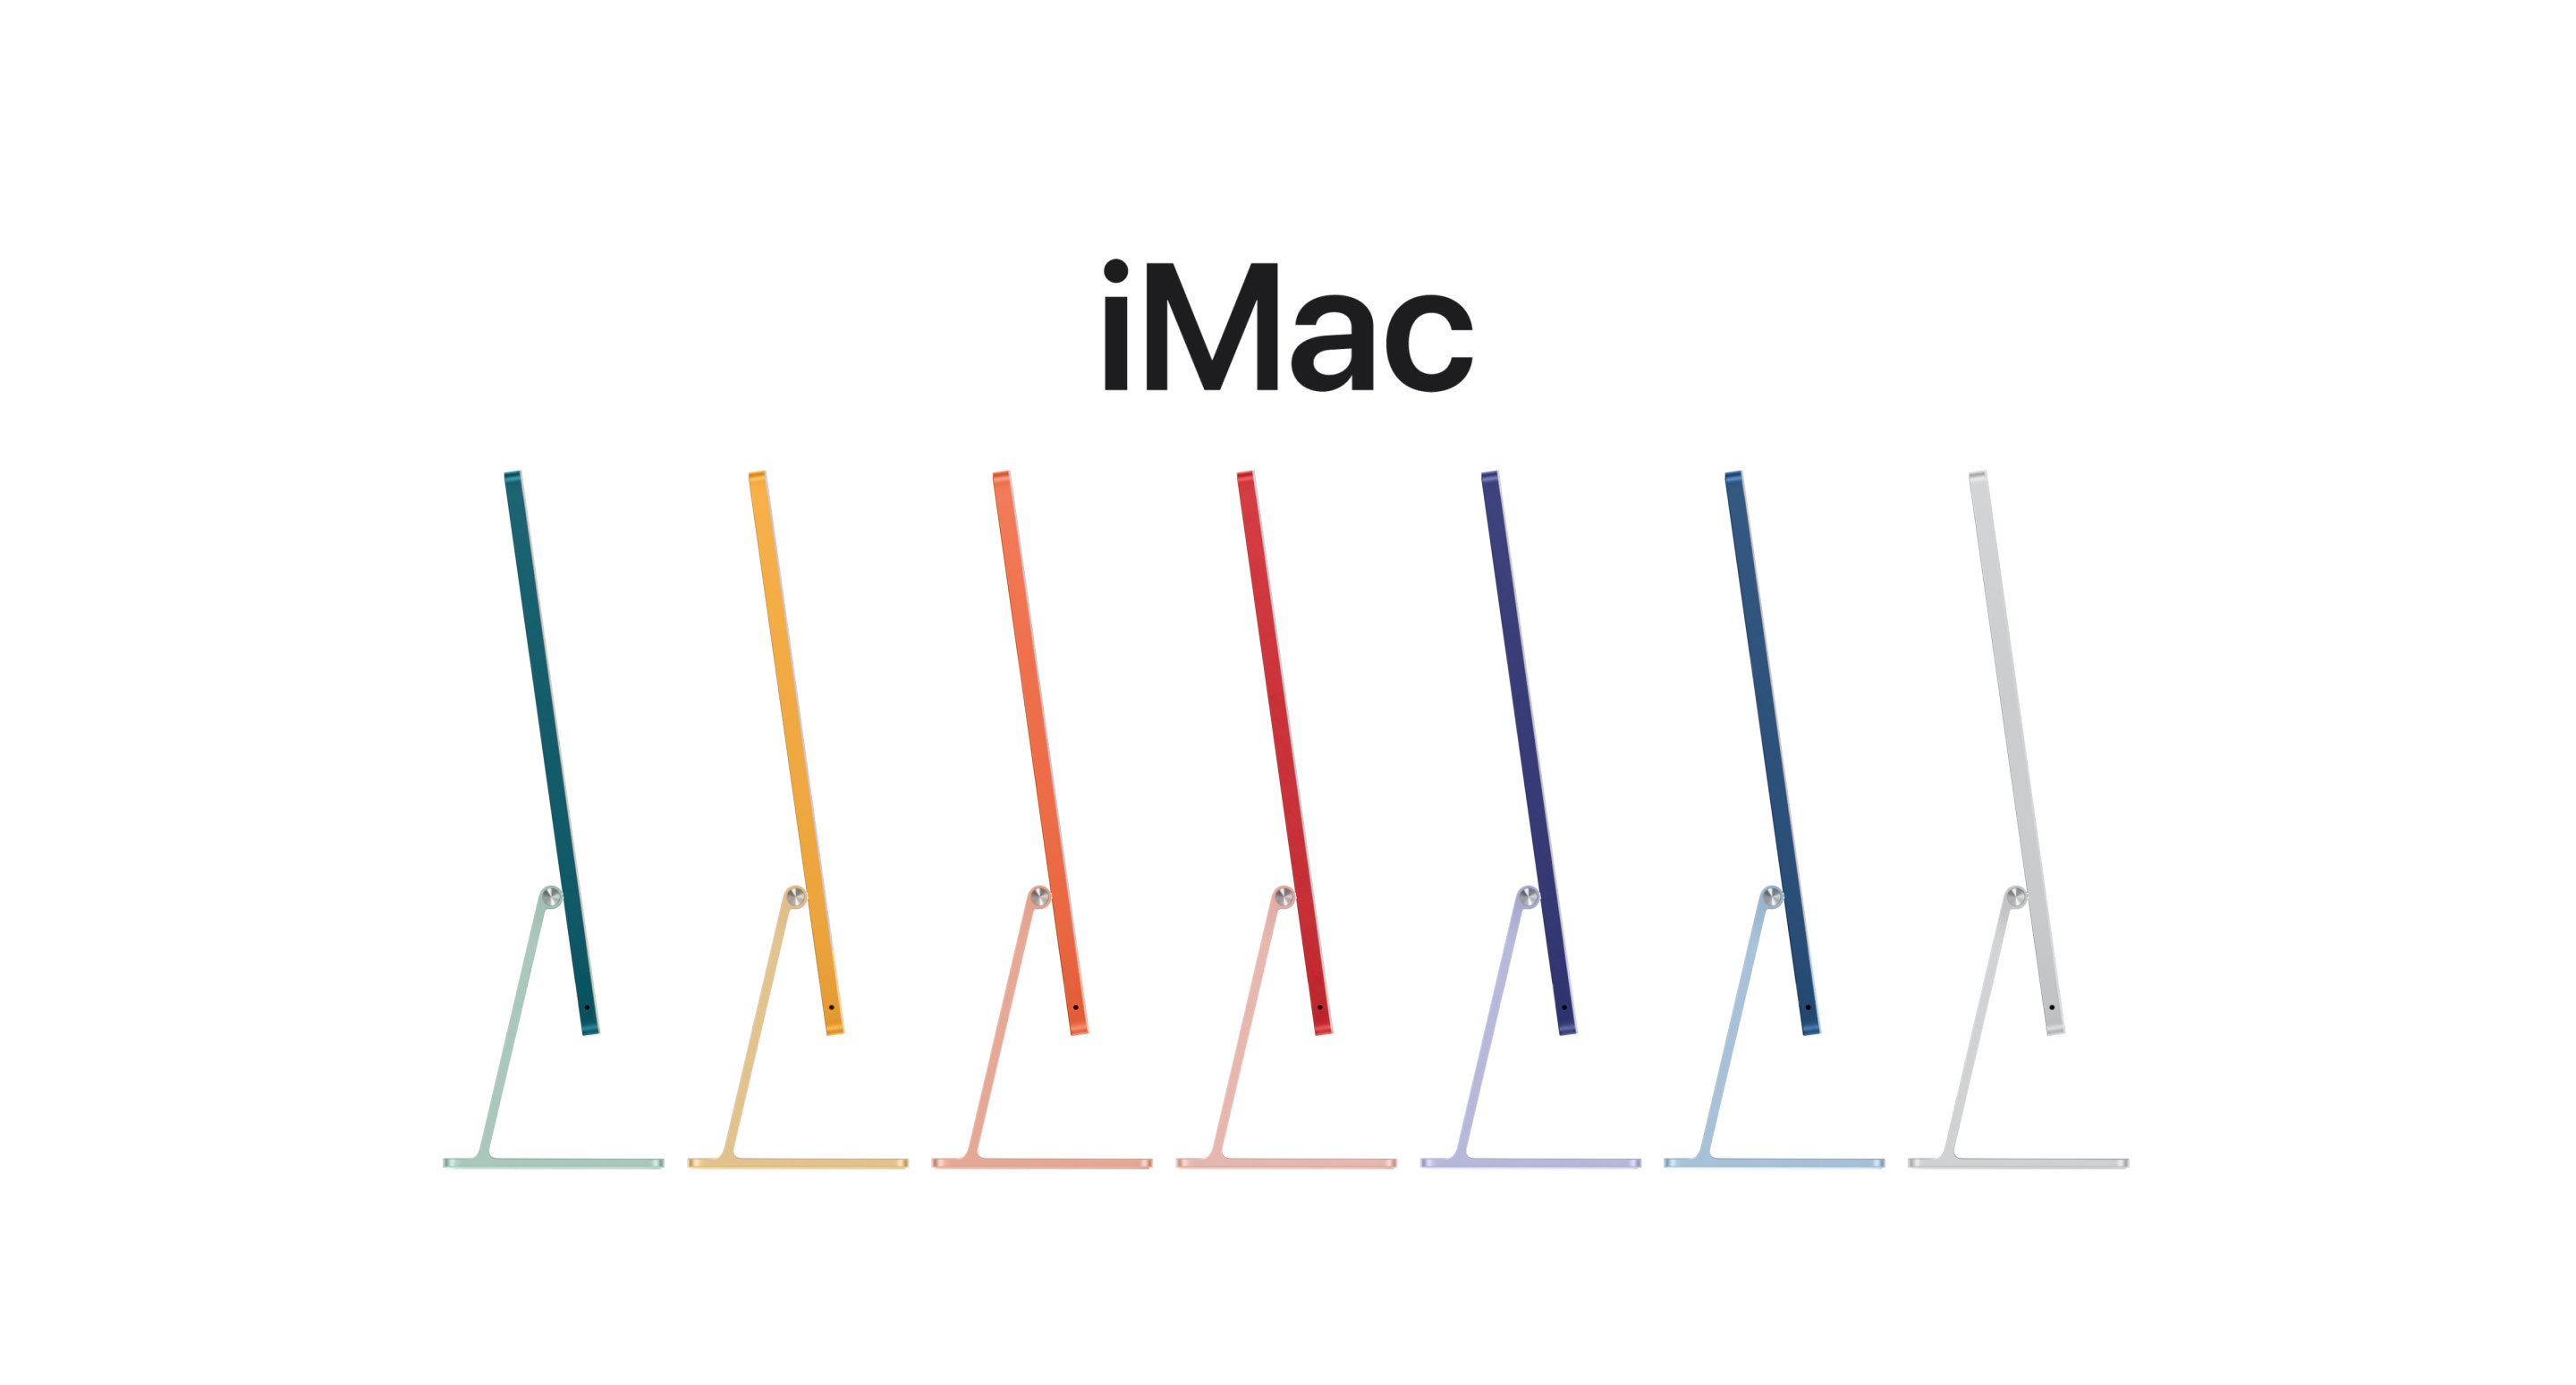 展示 iMac 全部七种颜色的动画